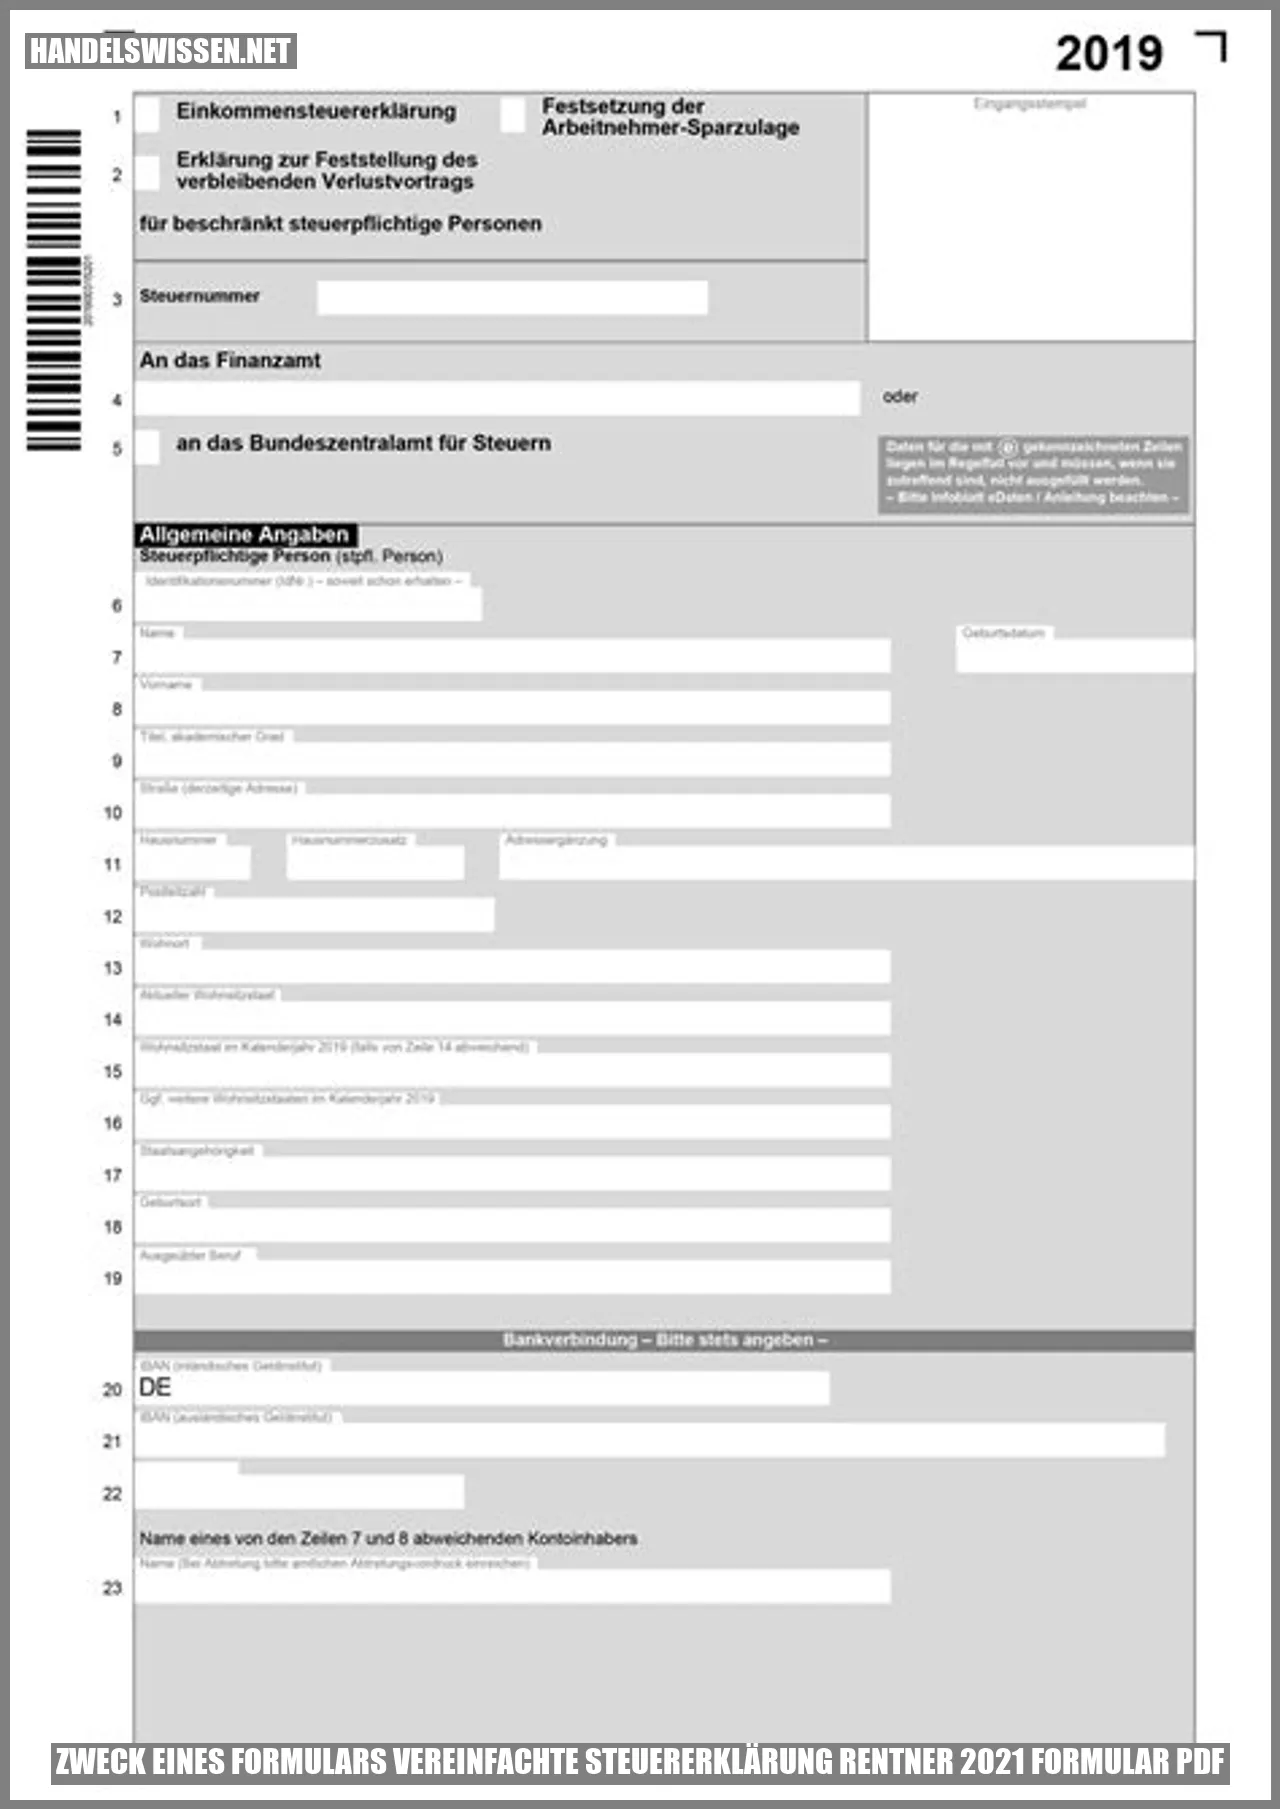 Zweck eines Formulars vereinfachte steuererklärung rentner 2021 Formular pdf